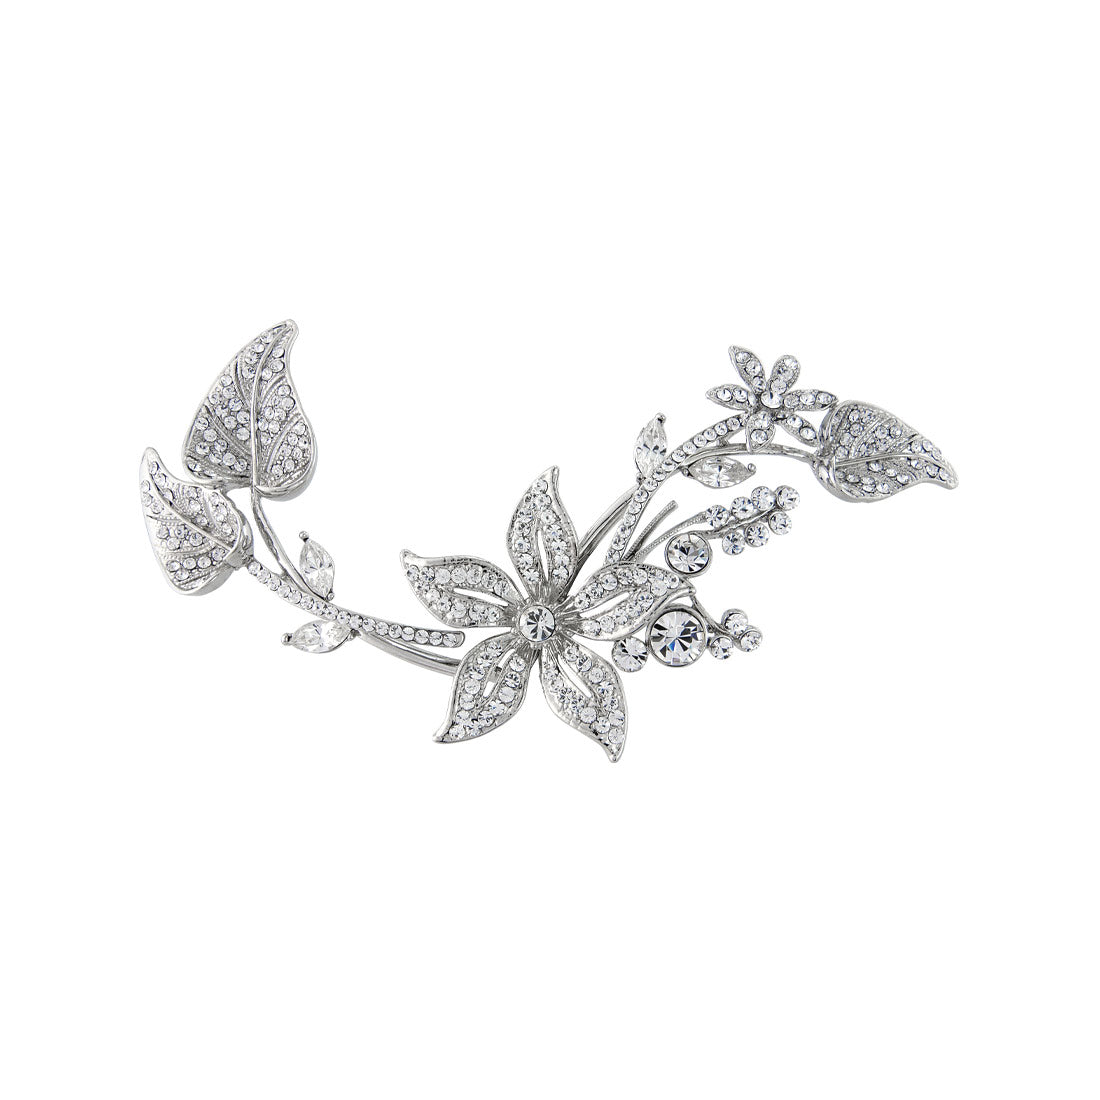 Floral Posy Silver Leaf Wedding Headpiece